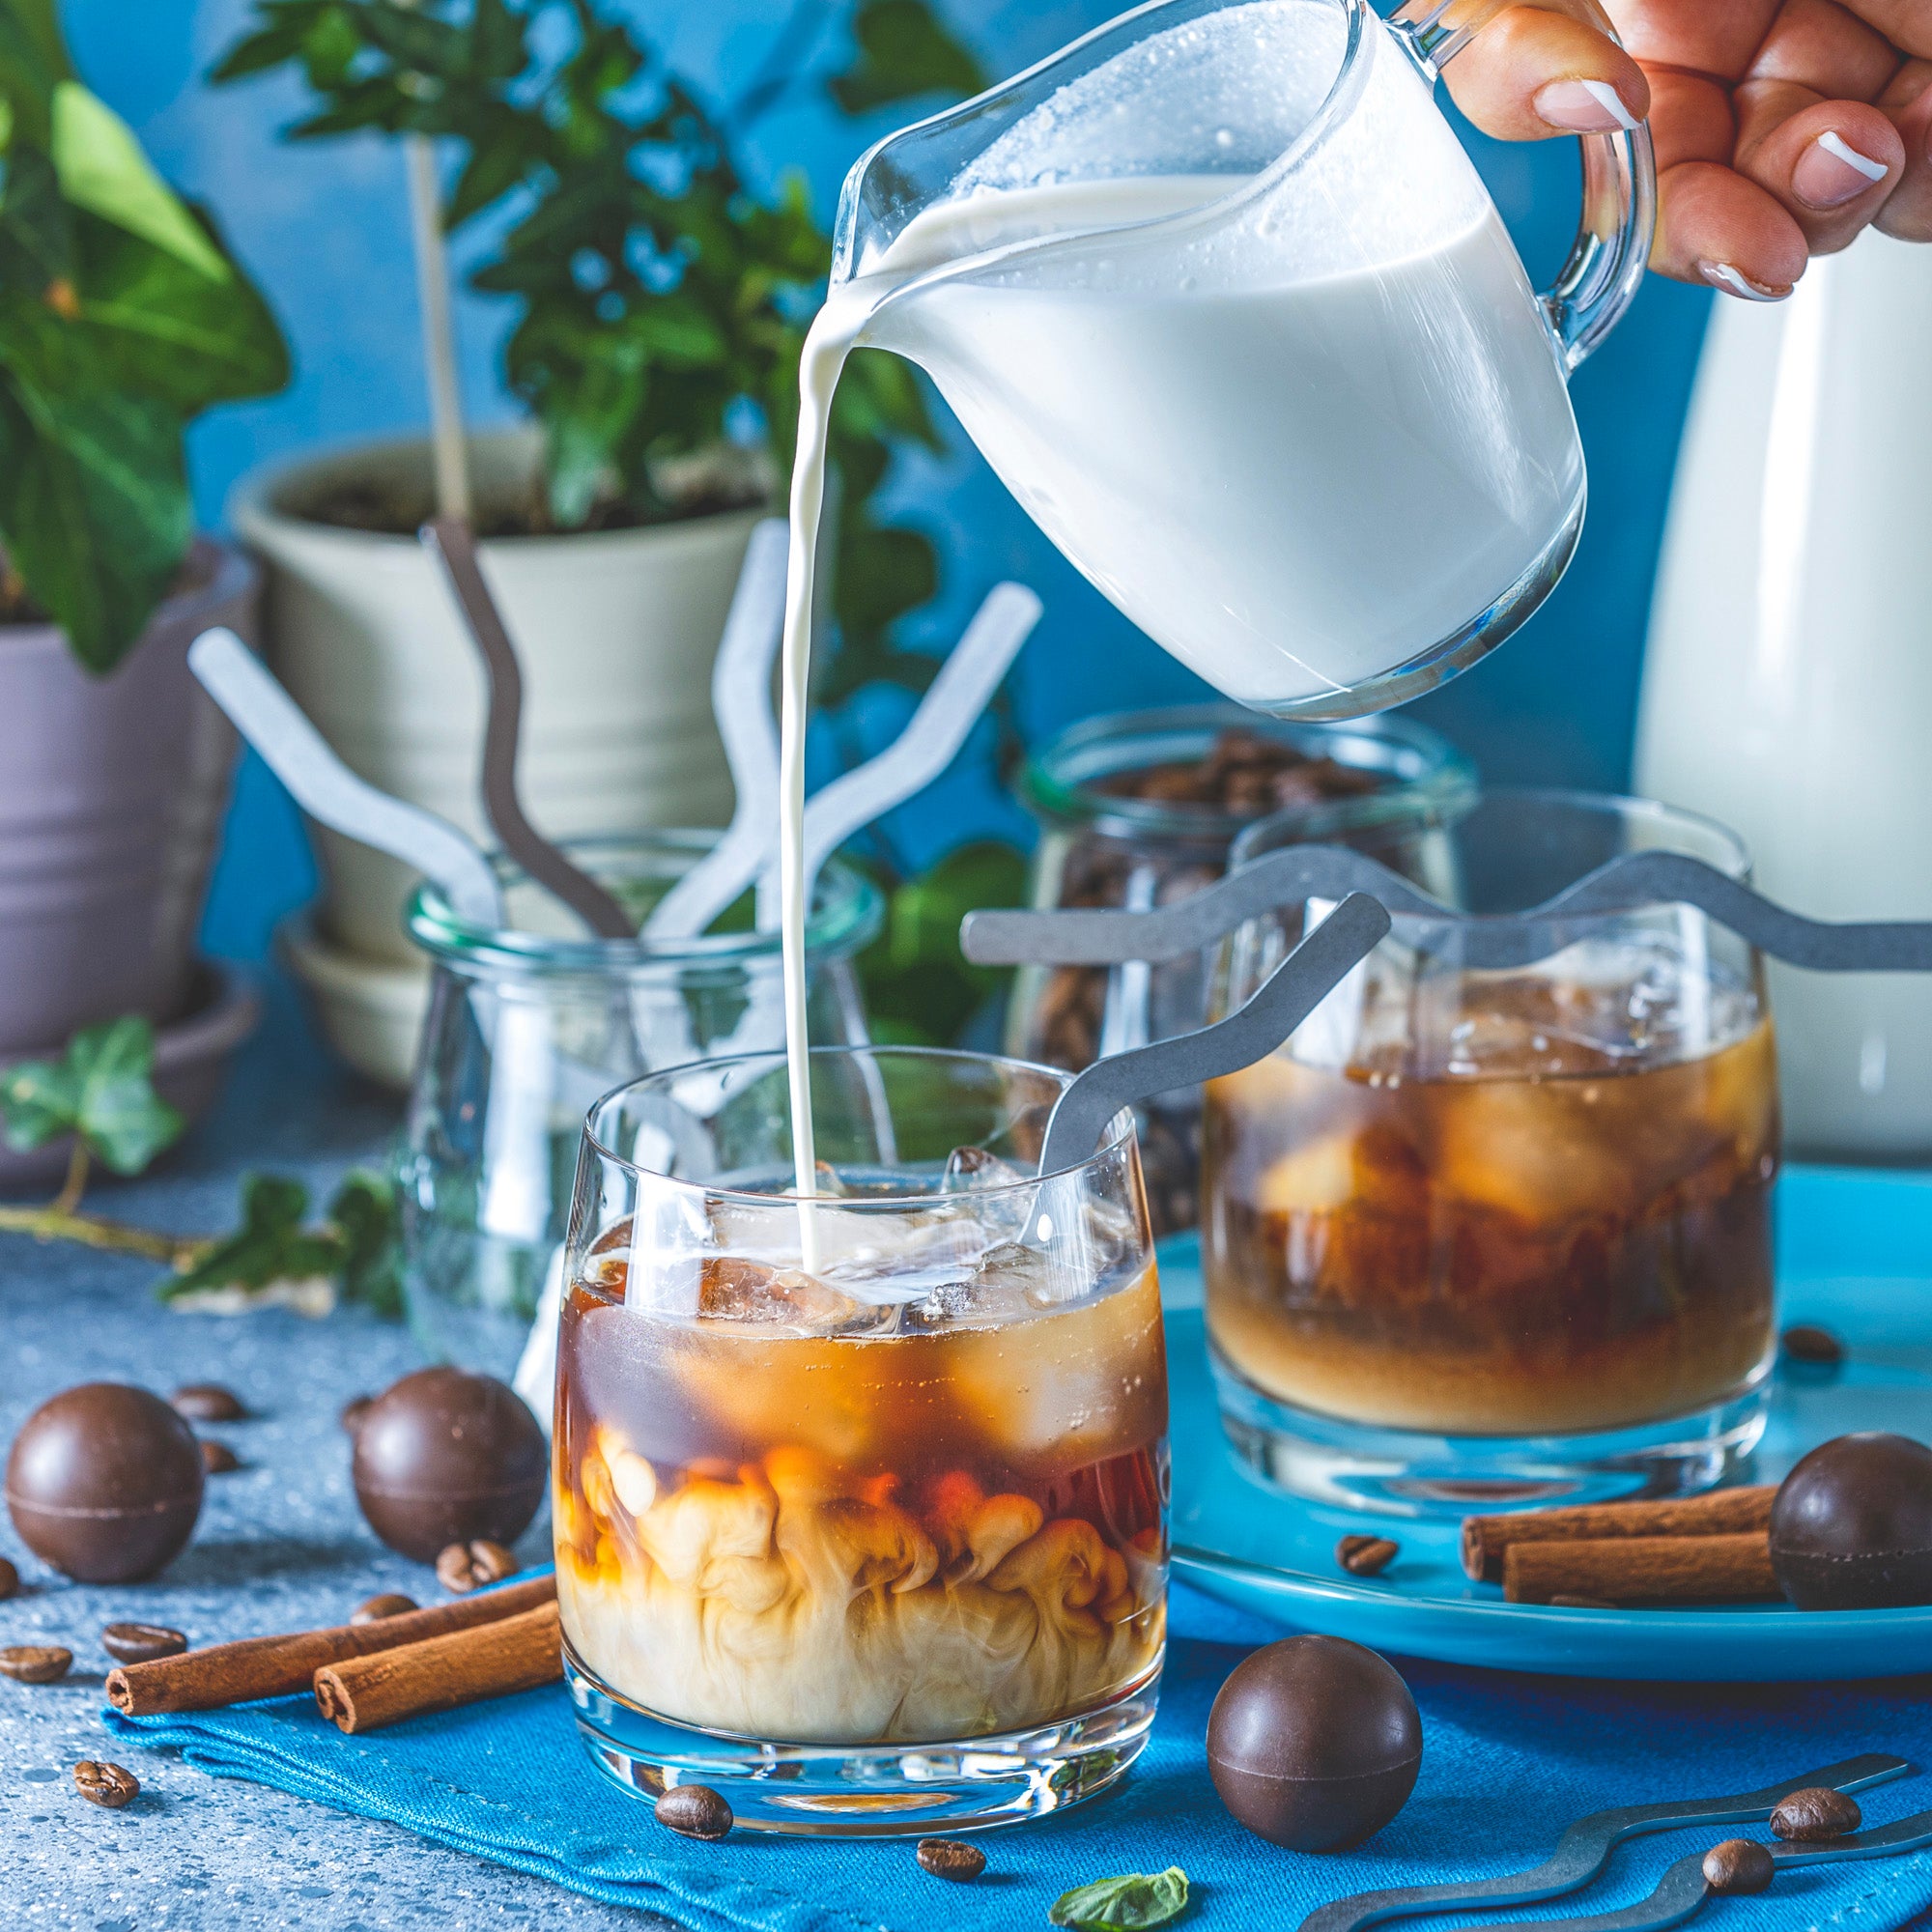 Cocoa Gnomes - Coffee & Cocoa Stirrers - Raw Rutes